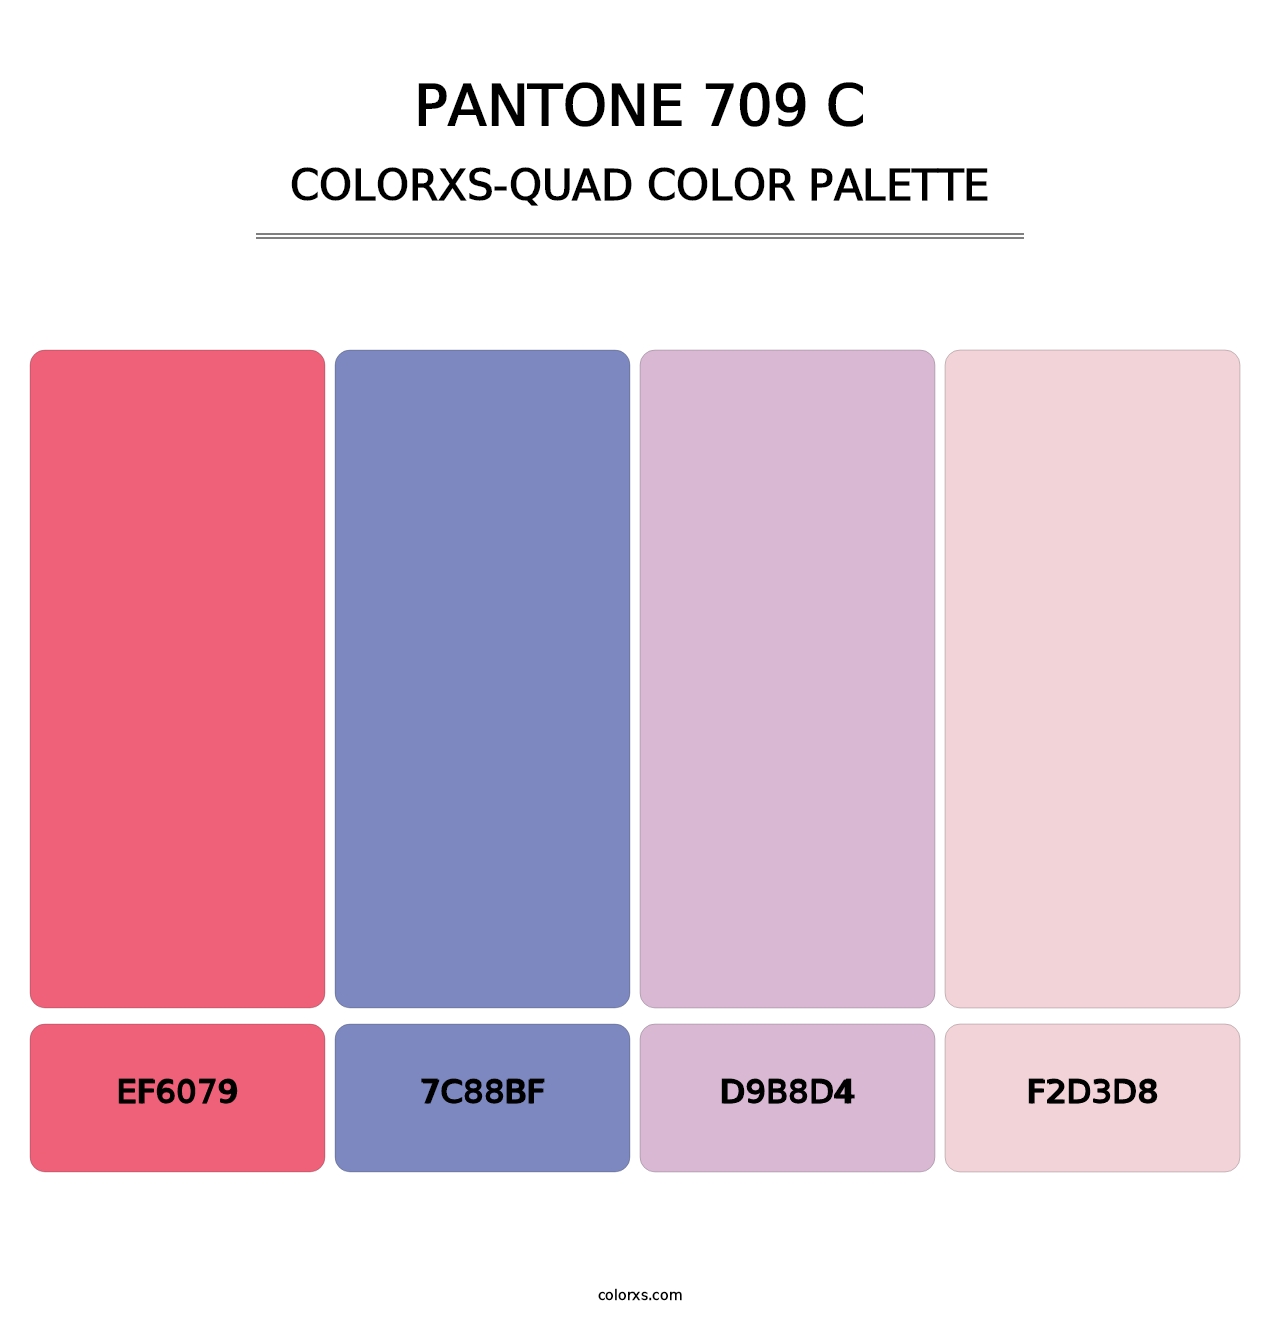 PANTONE 709 C - Colorxs Quad Palette